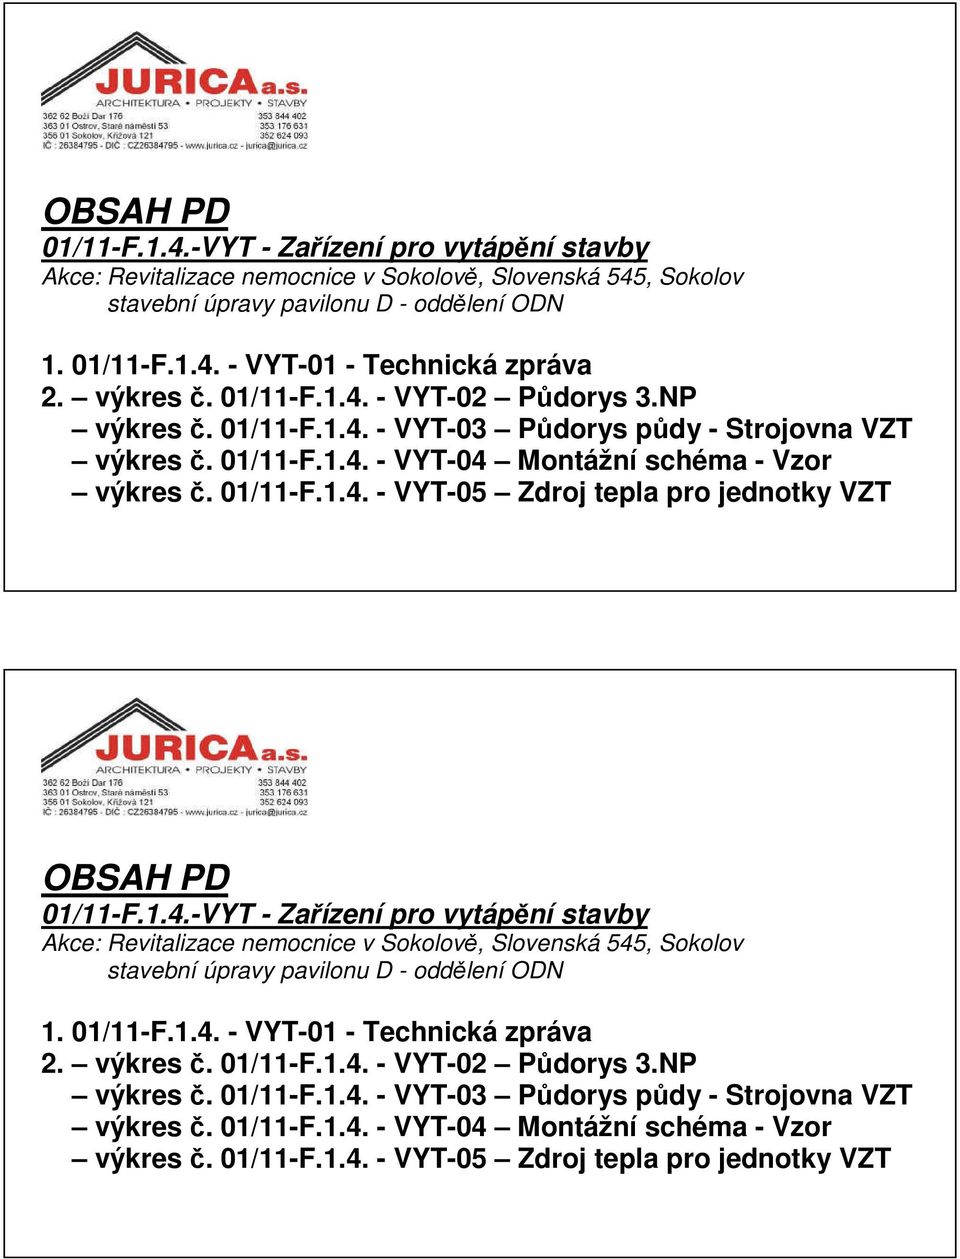 01/11-F.1.4. - VYT-03 Pdorys pdy - Strojovna VZT výkres. 01/11-F.1.4. - VYT-04 Montážní schéma - Vzor výkres. 01/11-F.1.4. - VYT-05 Zdroj tepla pro jednotky VZT